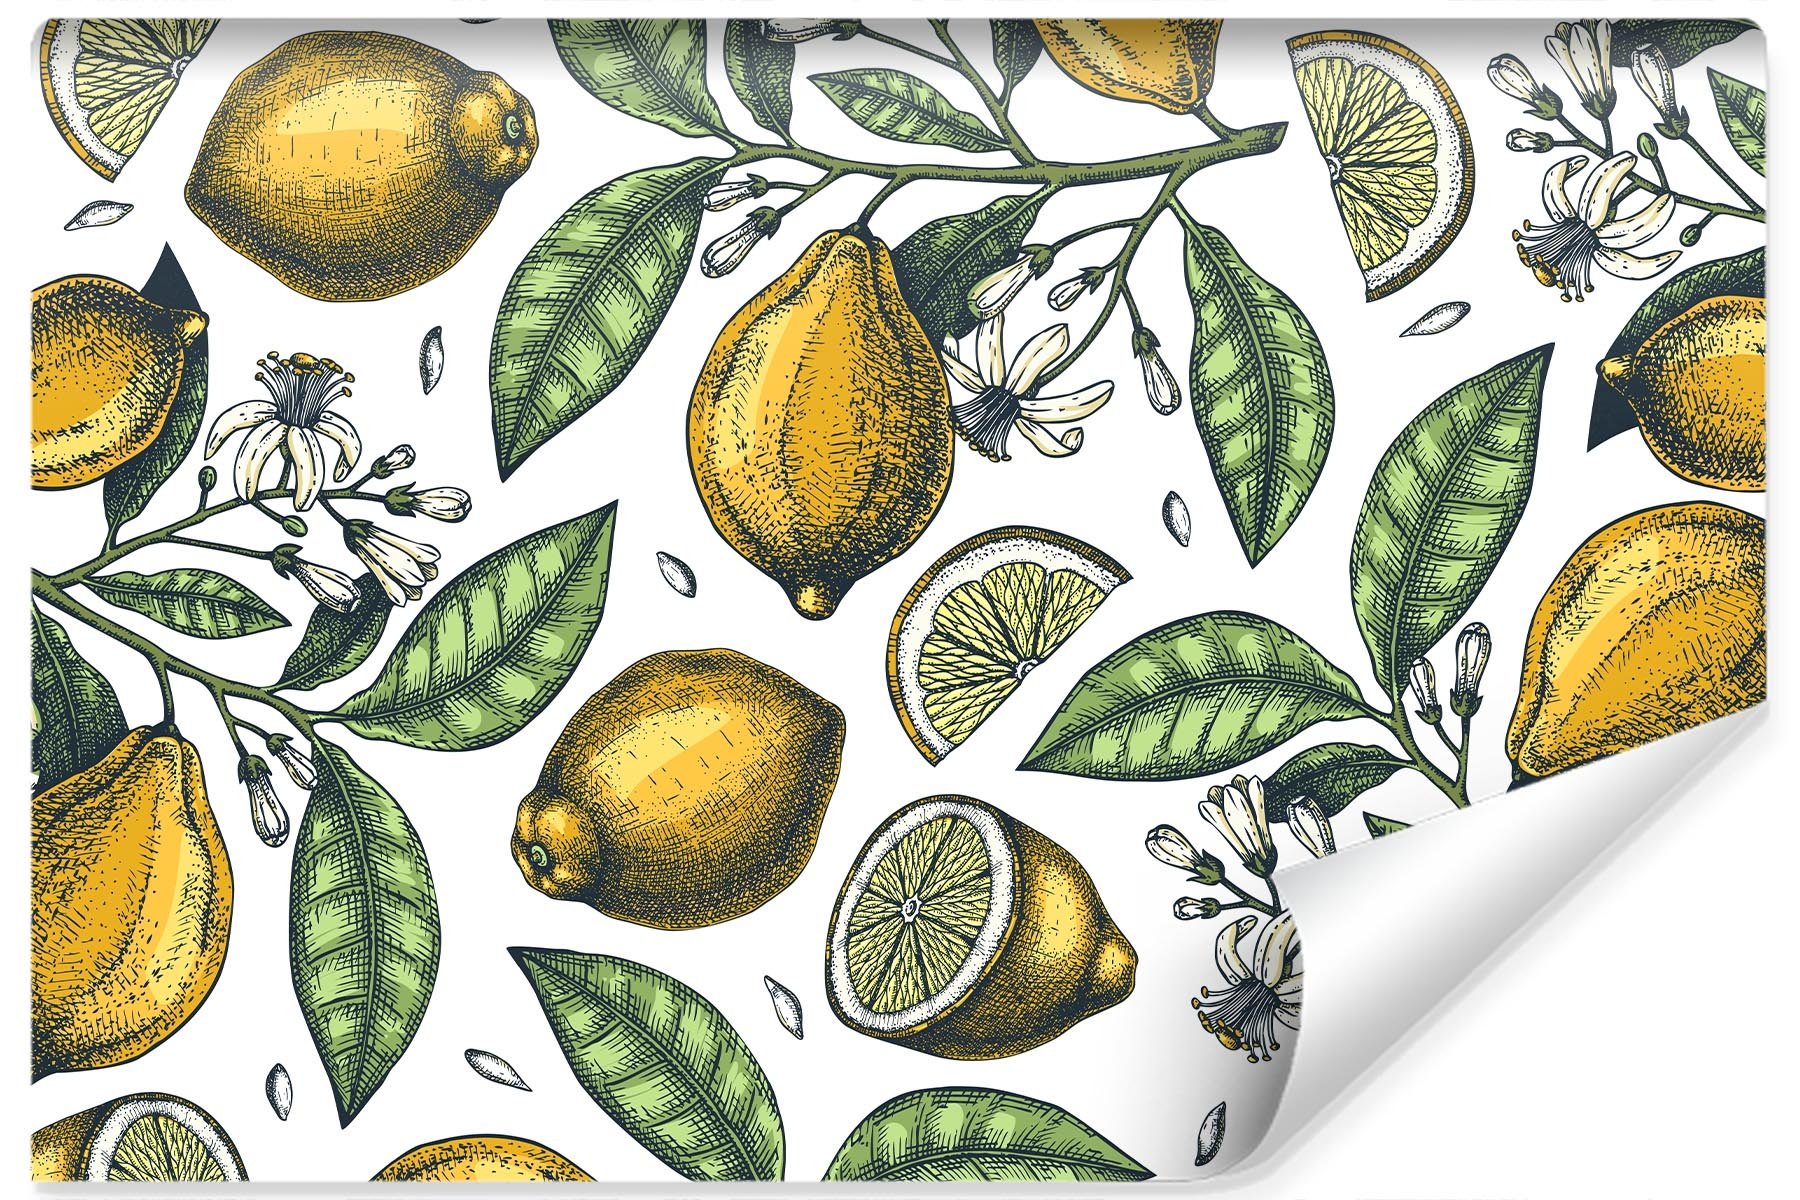 Photo wallpaper Lemons with flowers Non-woven 104 x 70.5 cm FT-3016-VEM